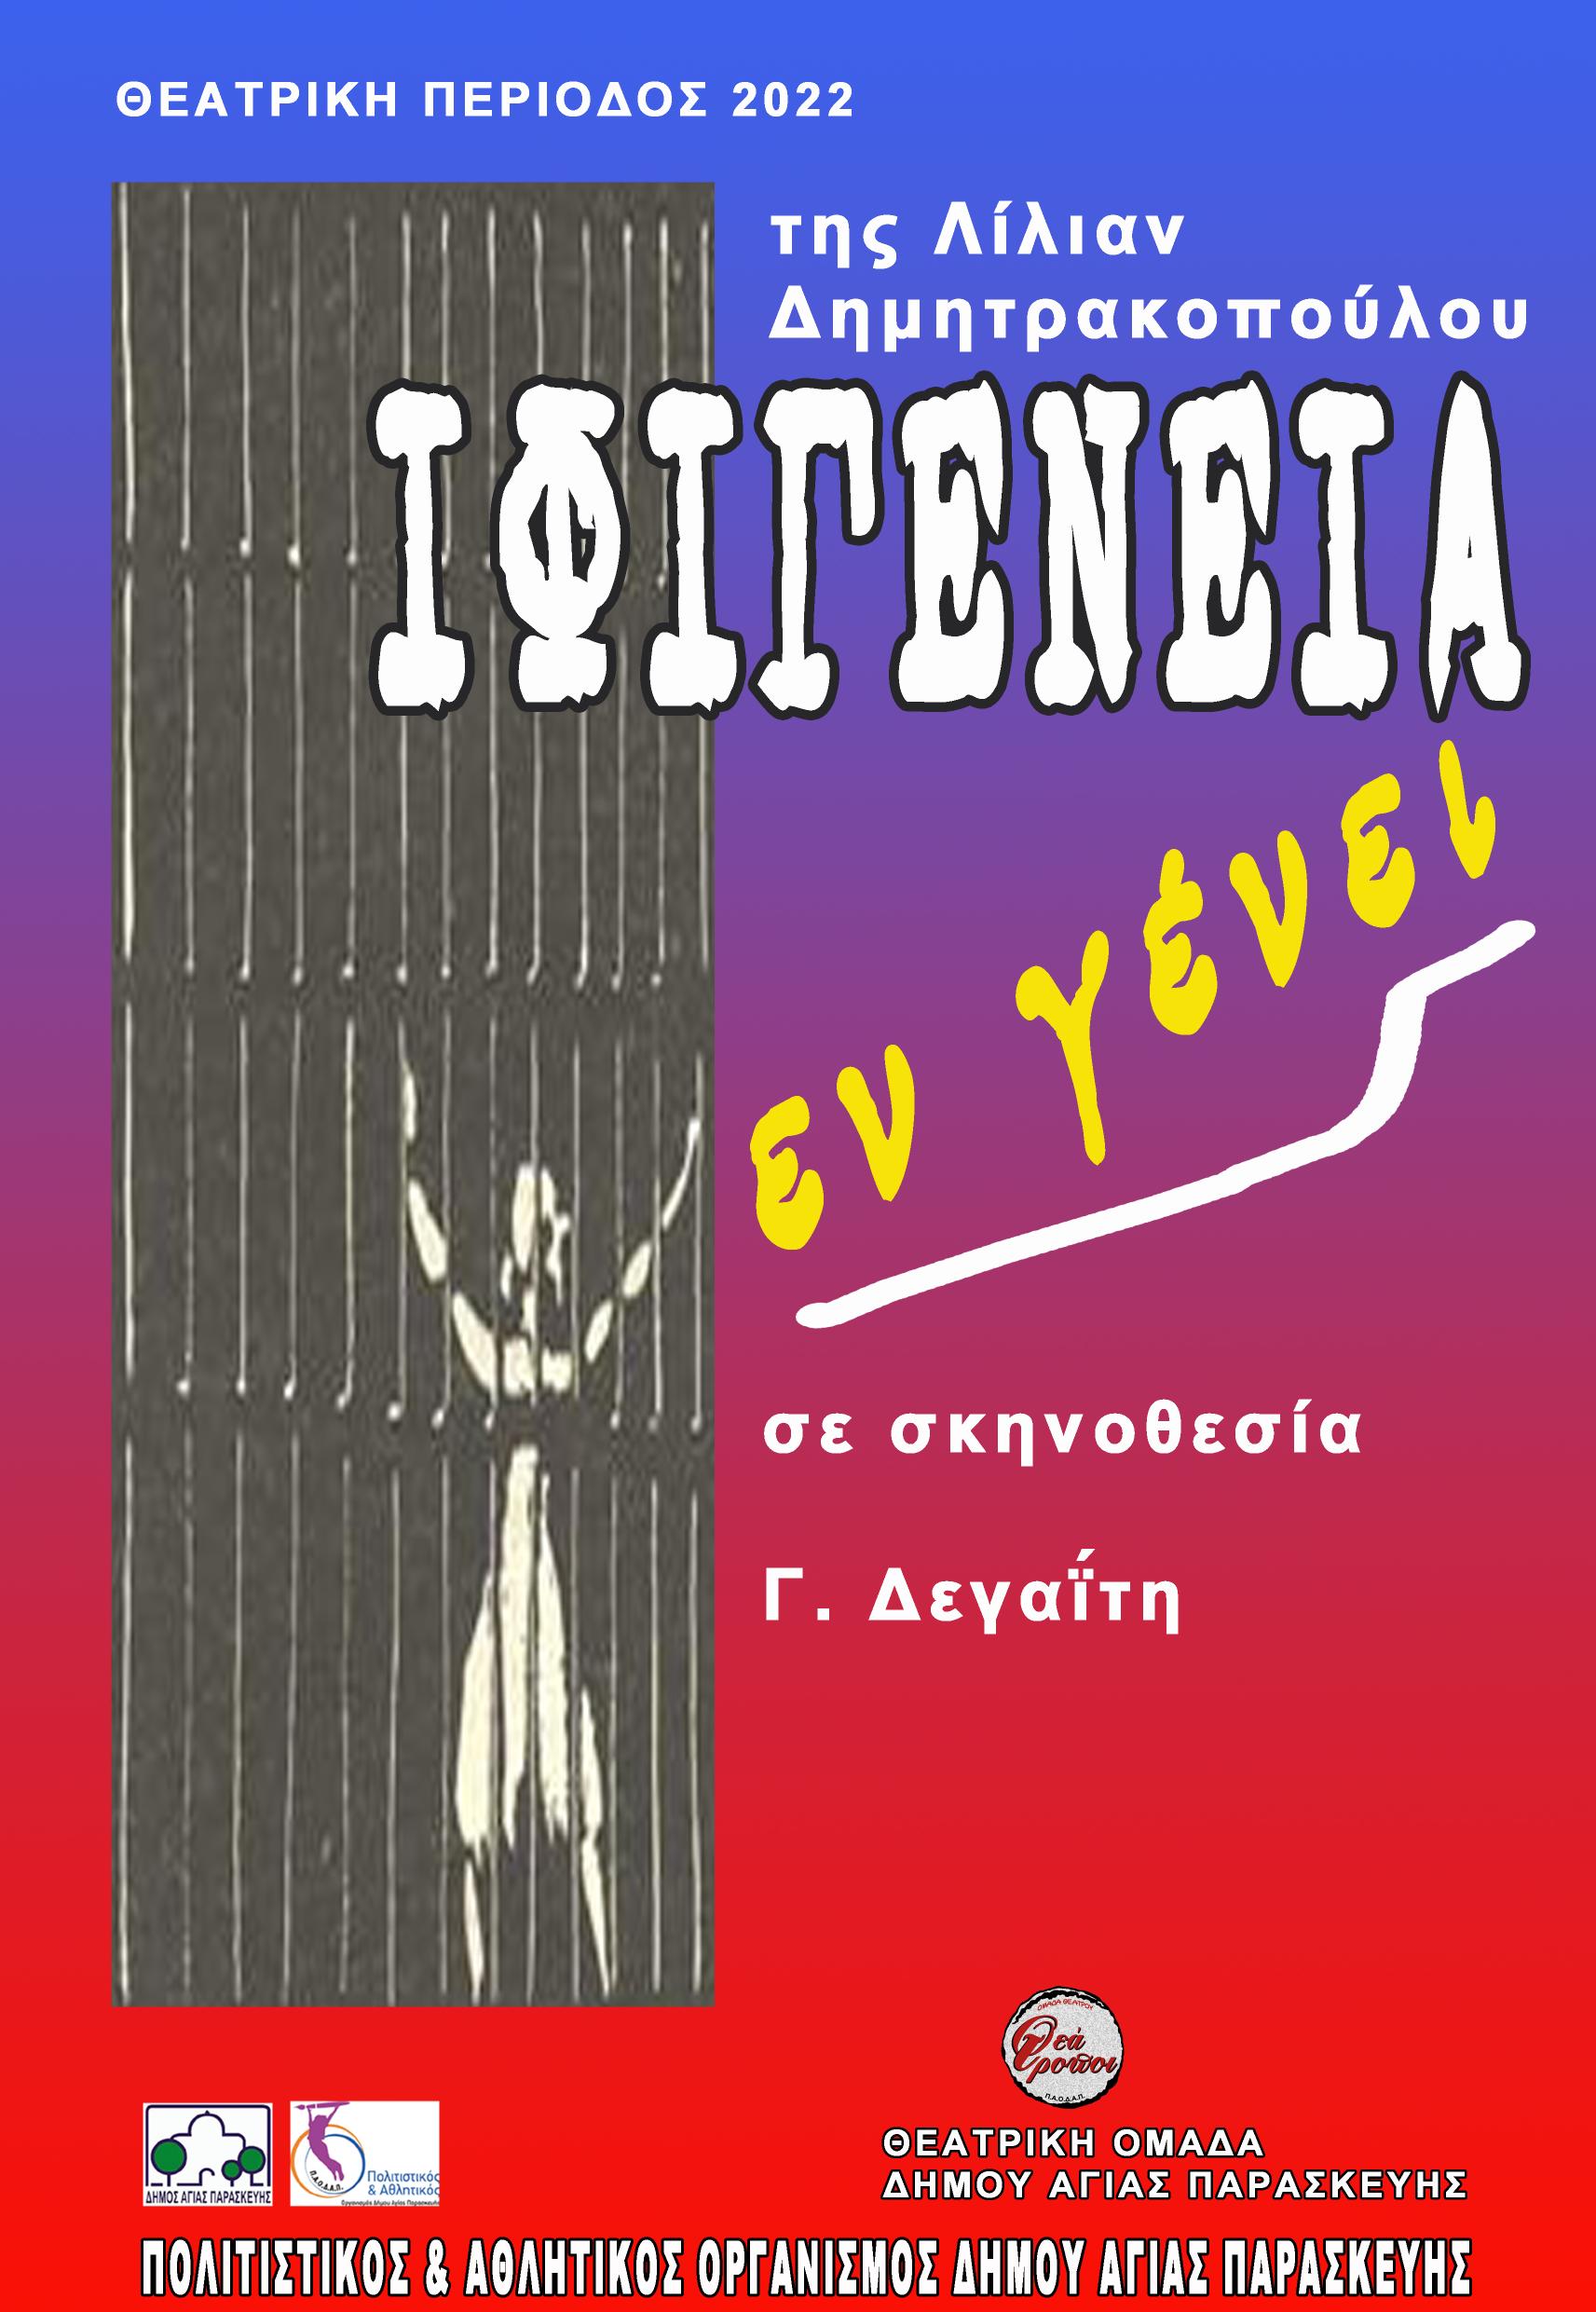 IFIGENEIA copy